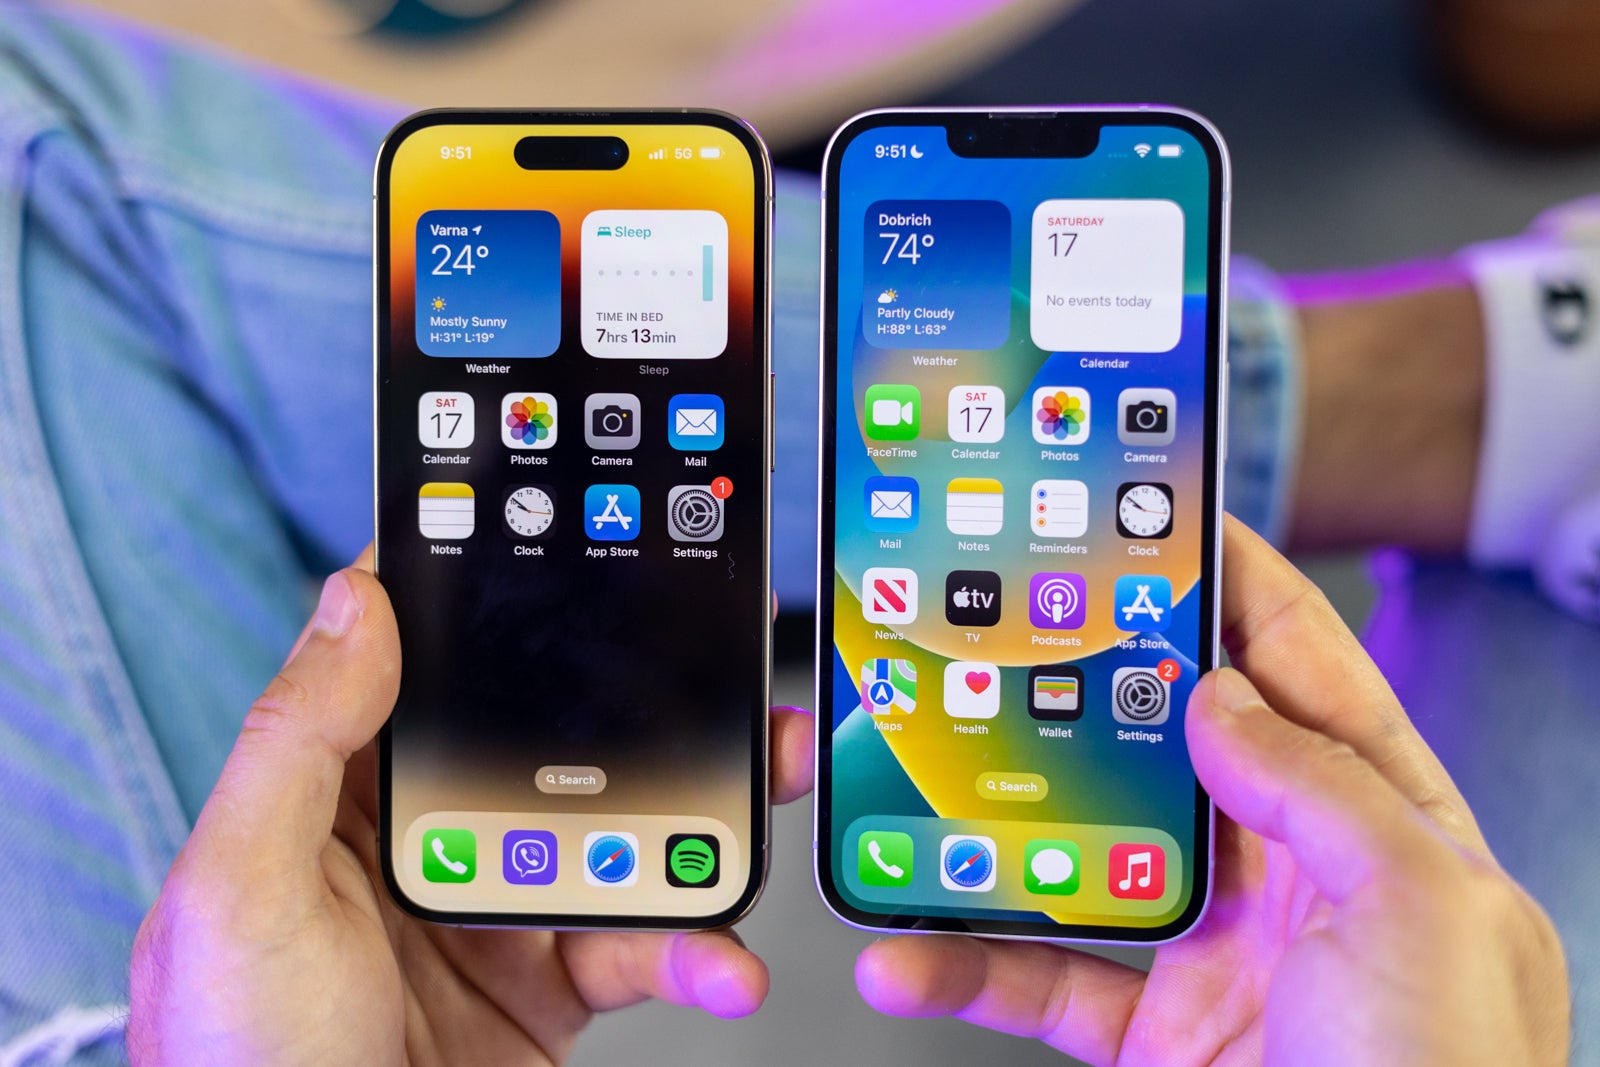 (이미지 신용 -PhoneArena) iPhone 14 Pro vs iPhone 14 -Apple iPhone 14 Pro vs iPhone 14 : 하나는 새롭고 다른 하나는 아닙니다